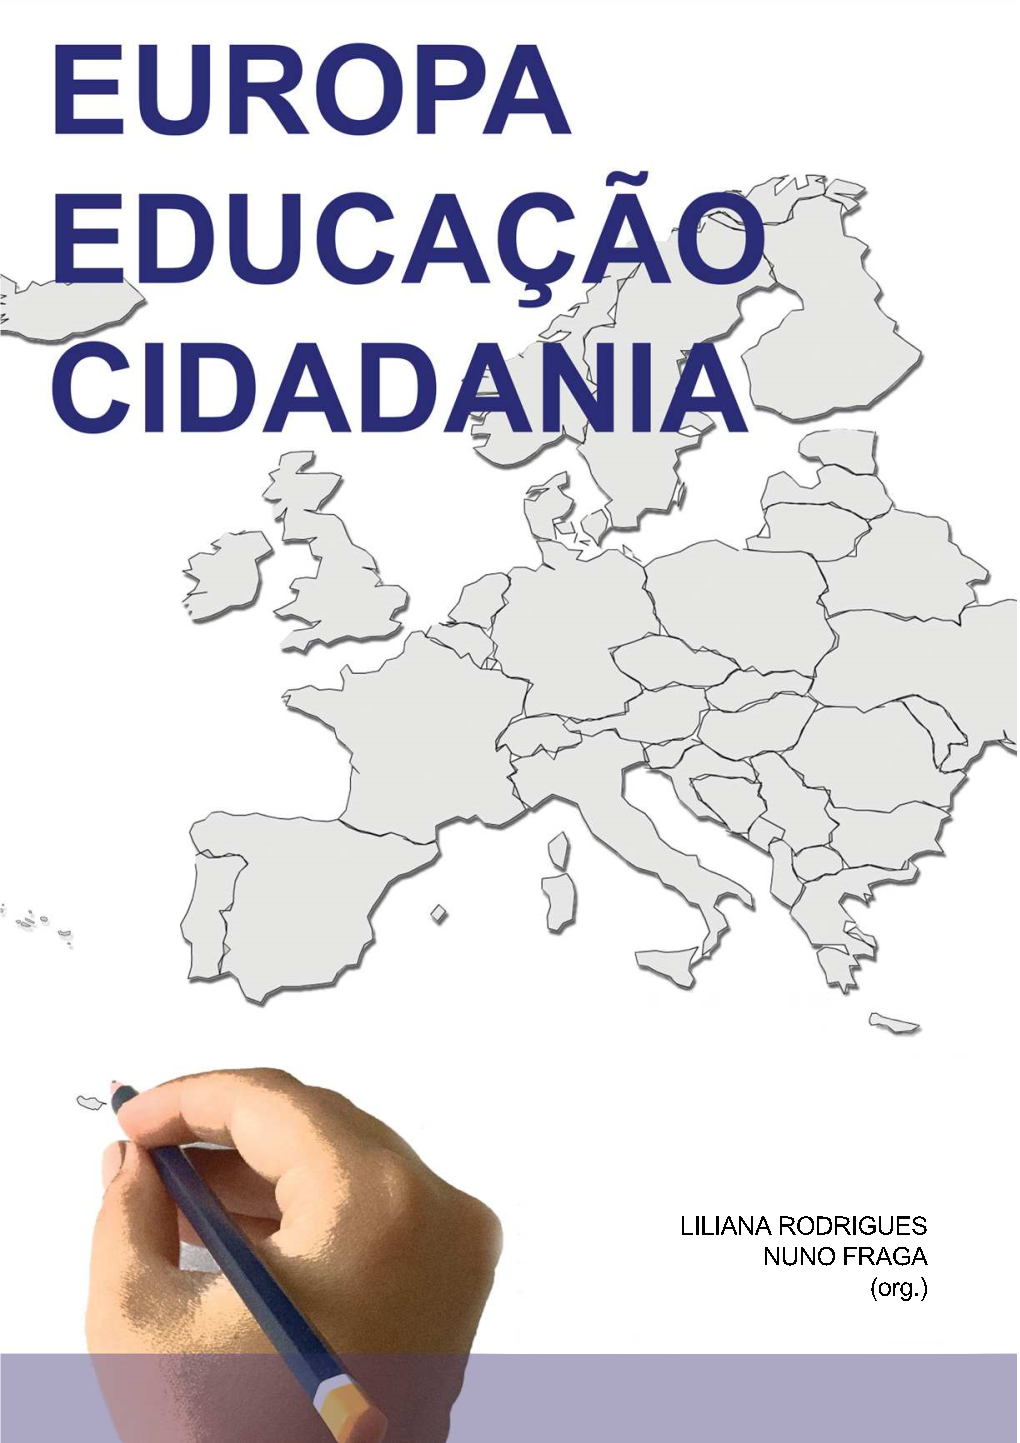 Europa, Educação, Cidadania”